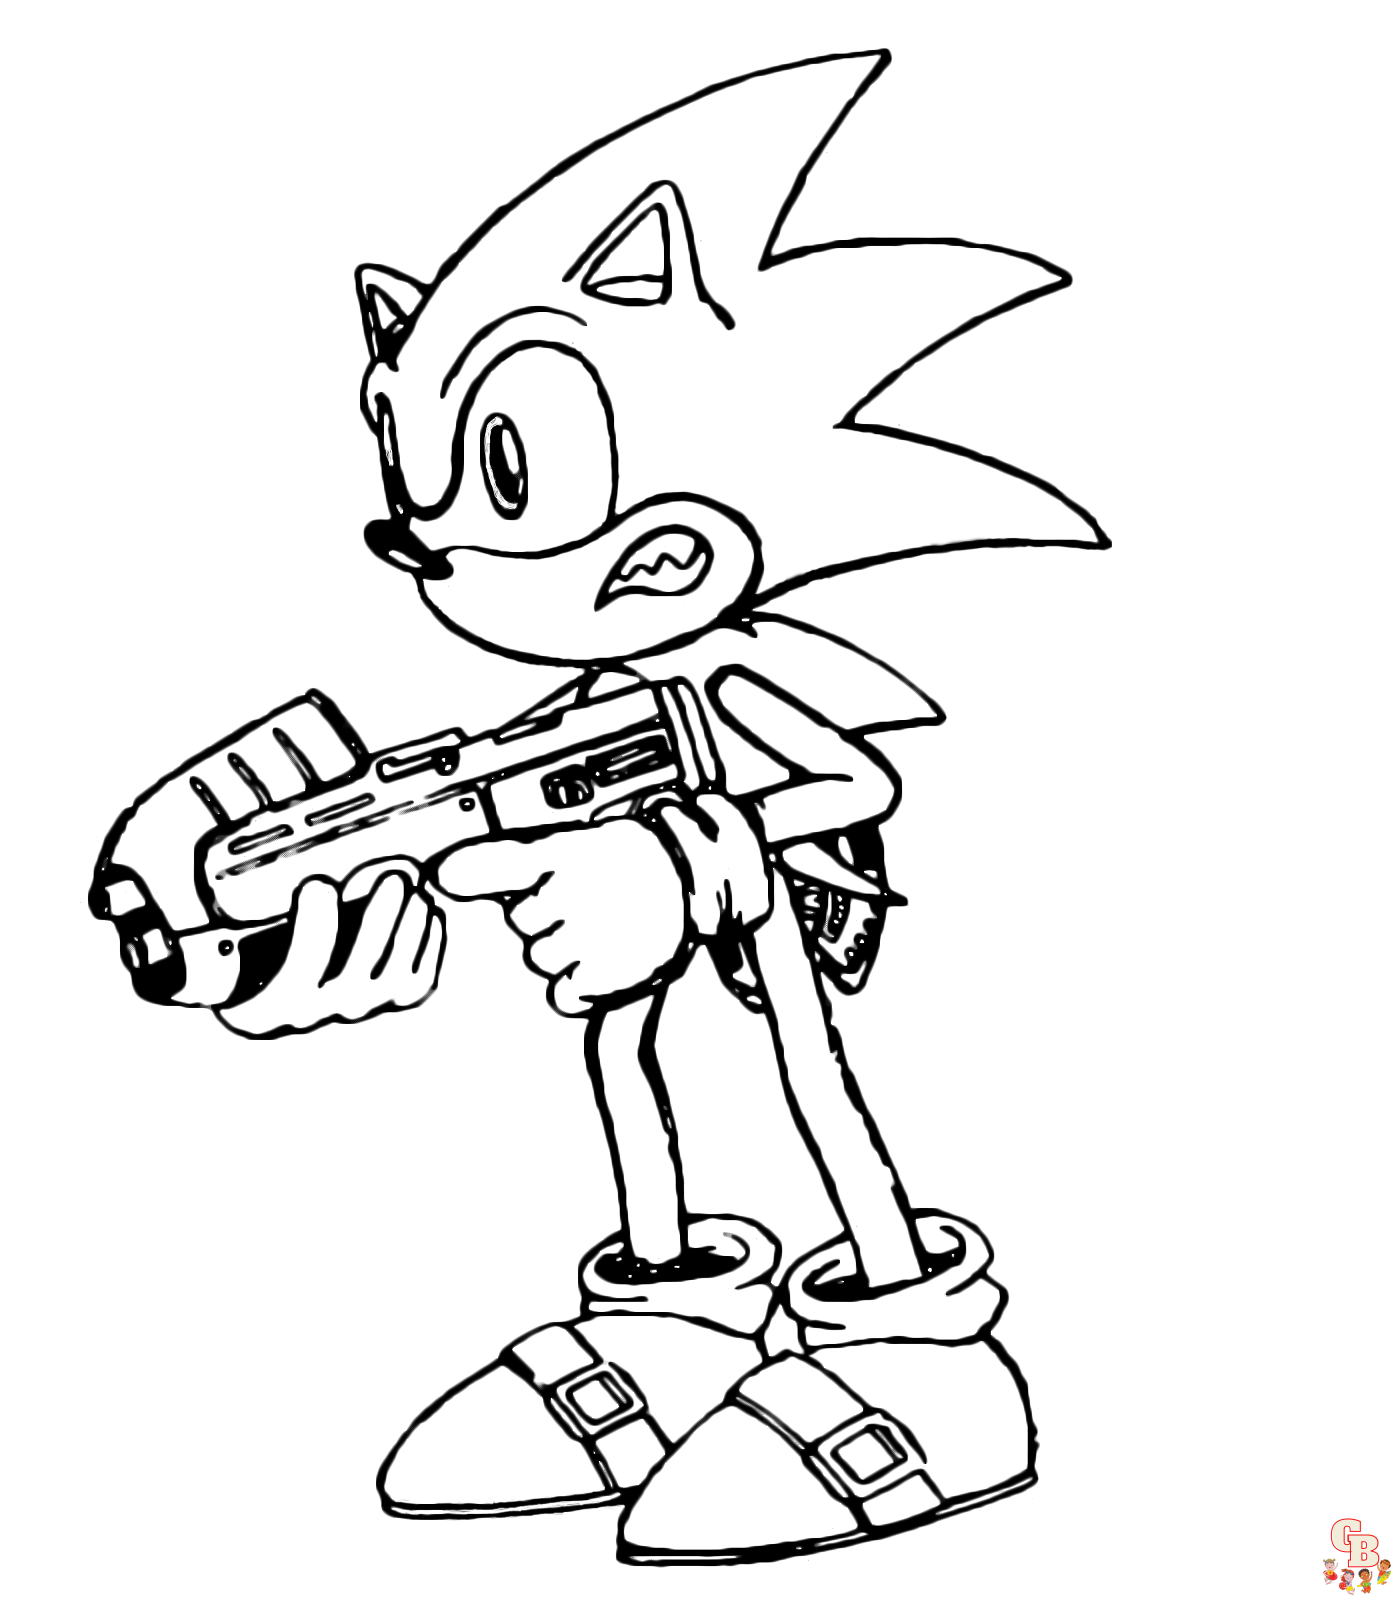 Sonic con láser en mano.